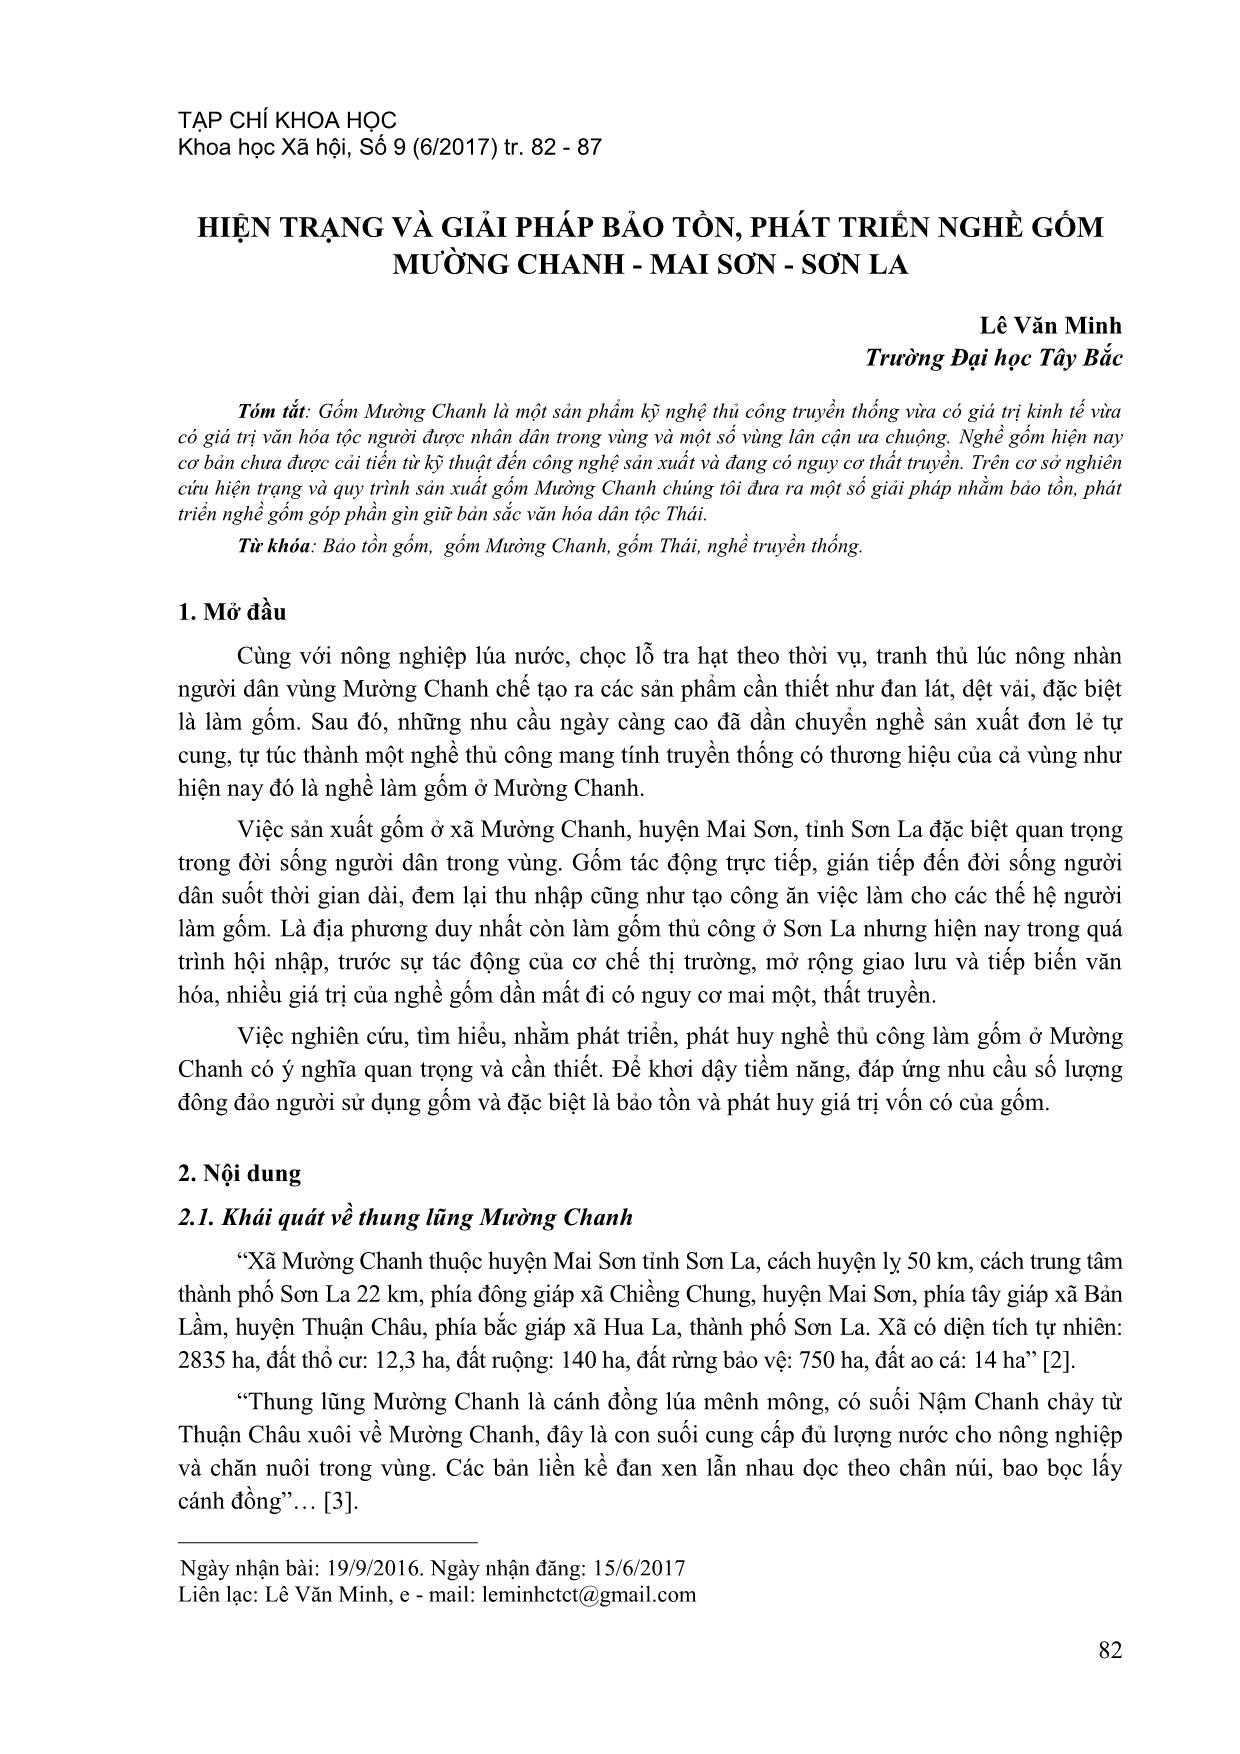 Hiện trạng và giải pháp bảo tồn, phát triển nghề gốm Mường chanh - Mai sơn - Sơn La trang 1